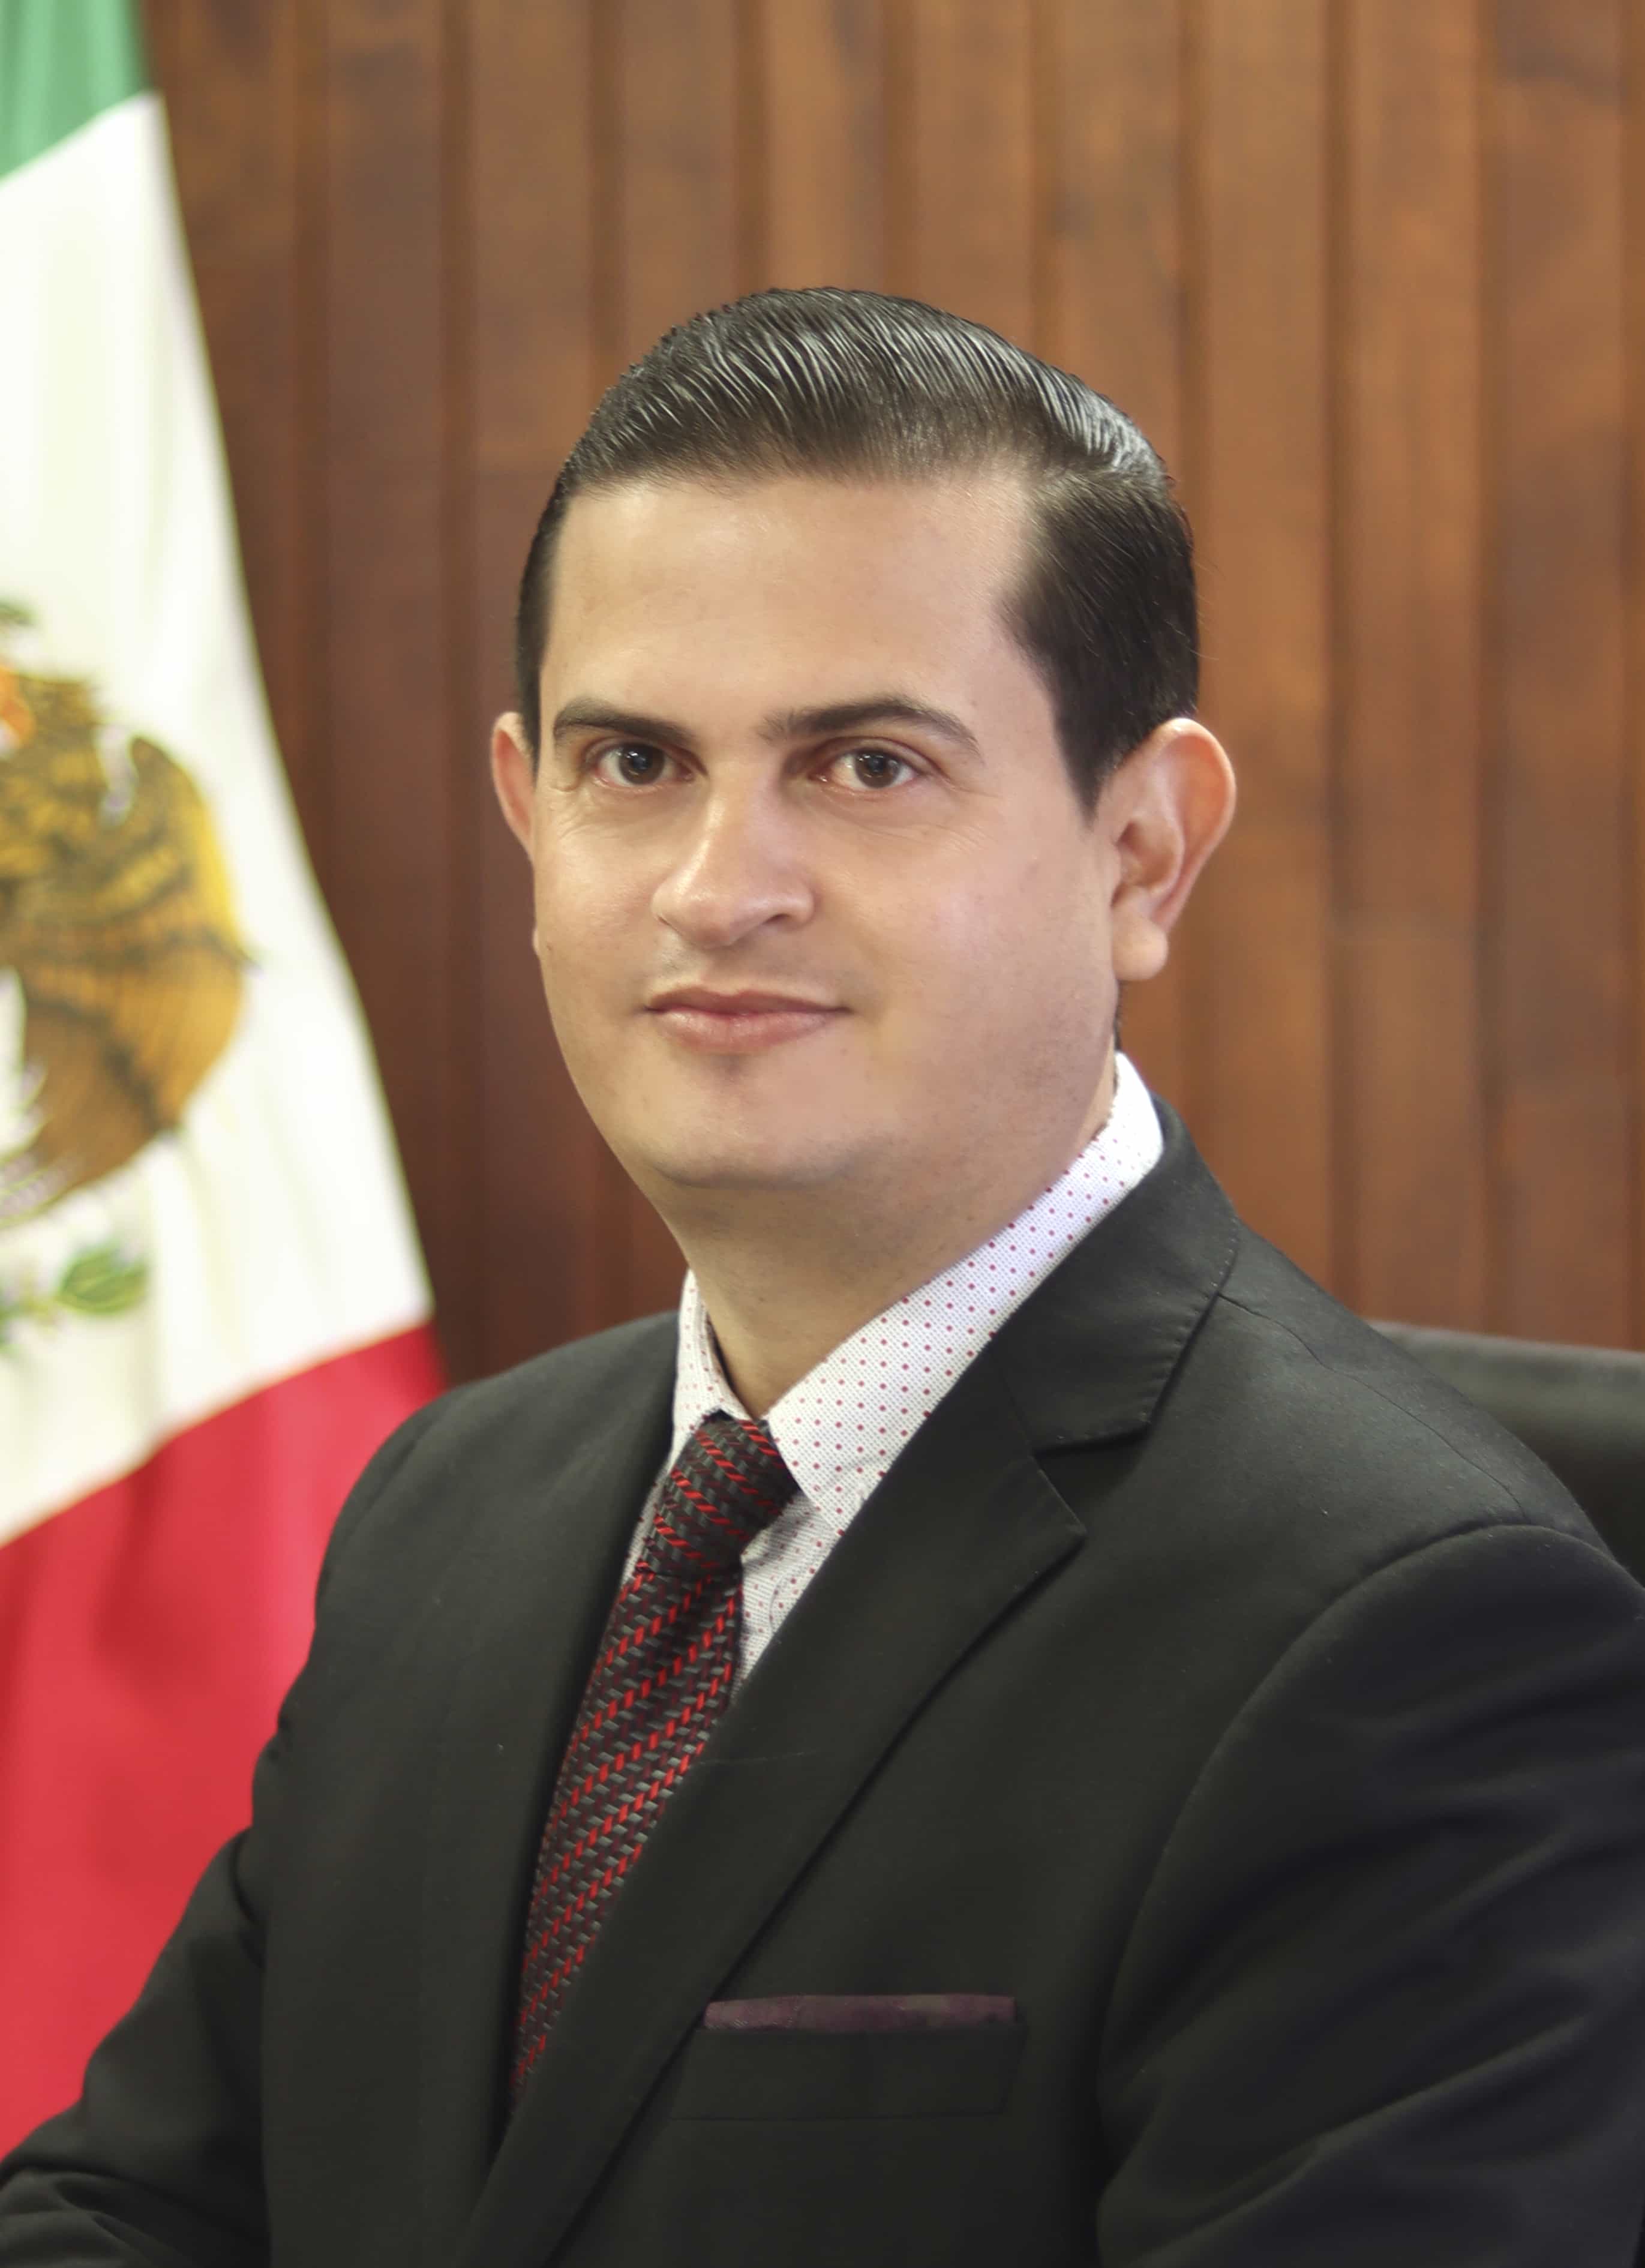 L.A. René Martínez Barraza